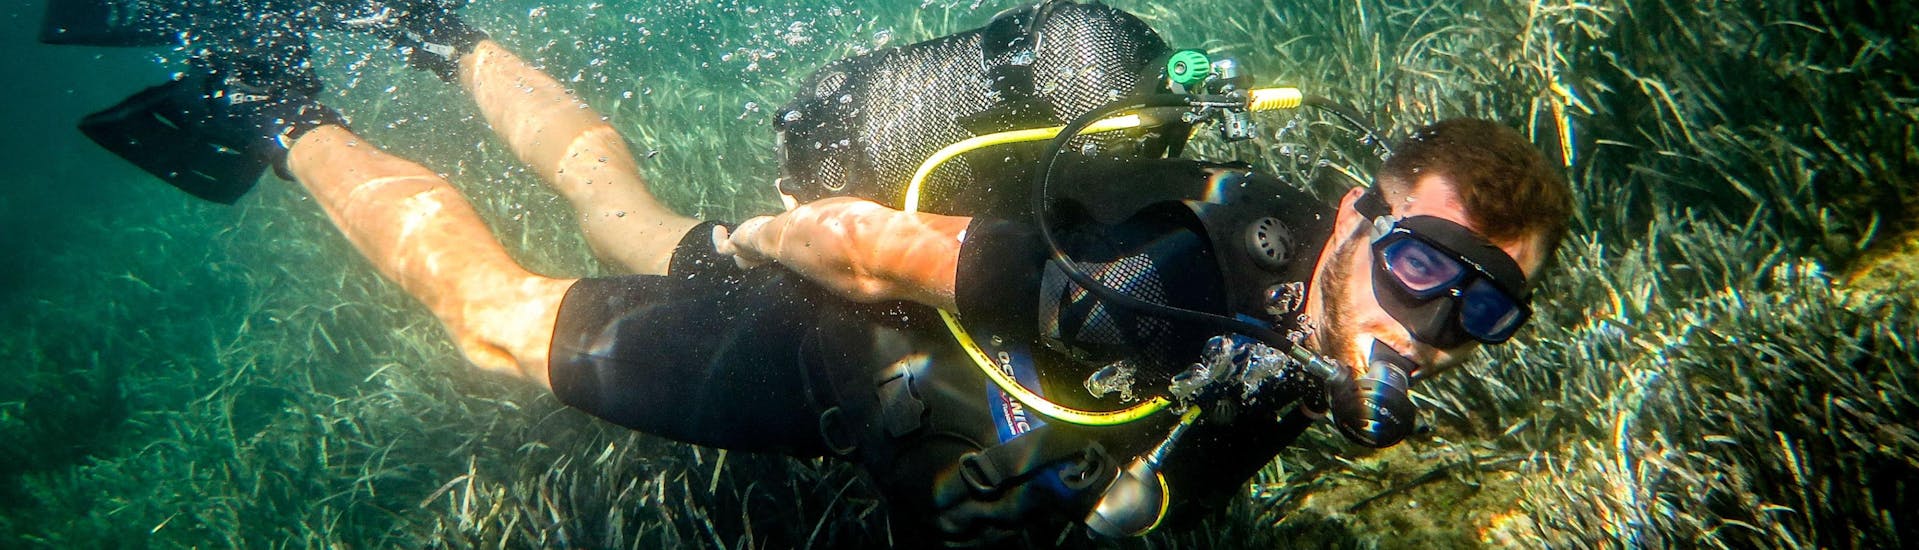 Formation plongée PADI Discover Scuba Diving à Qawra Bay.